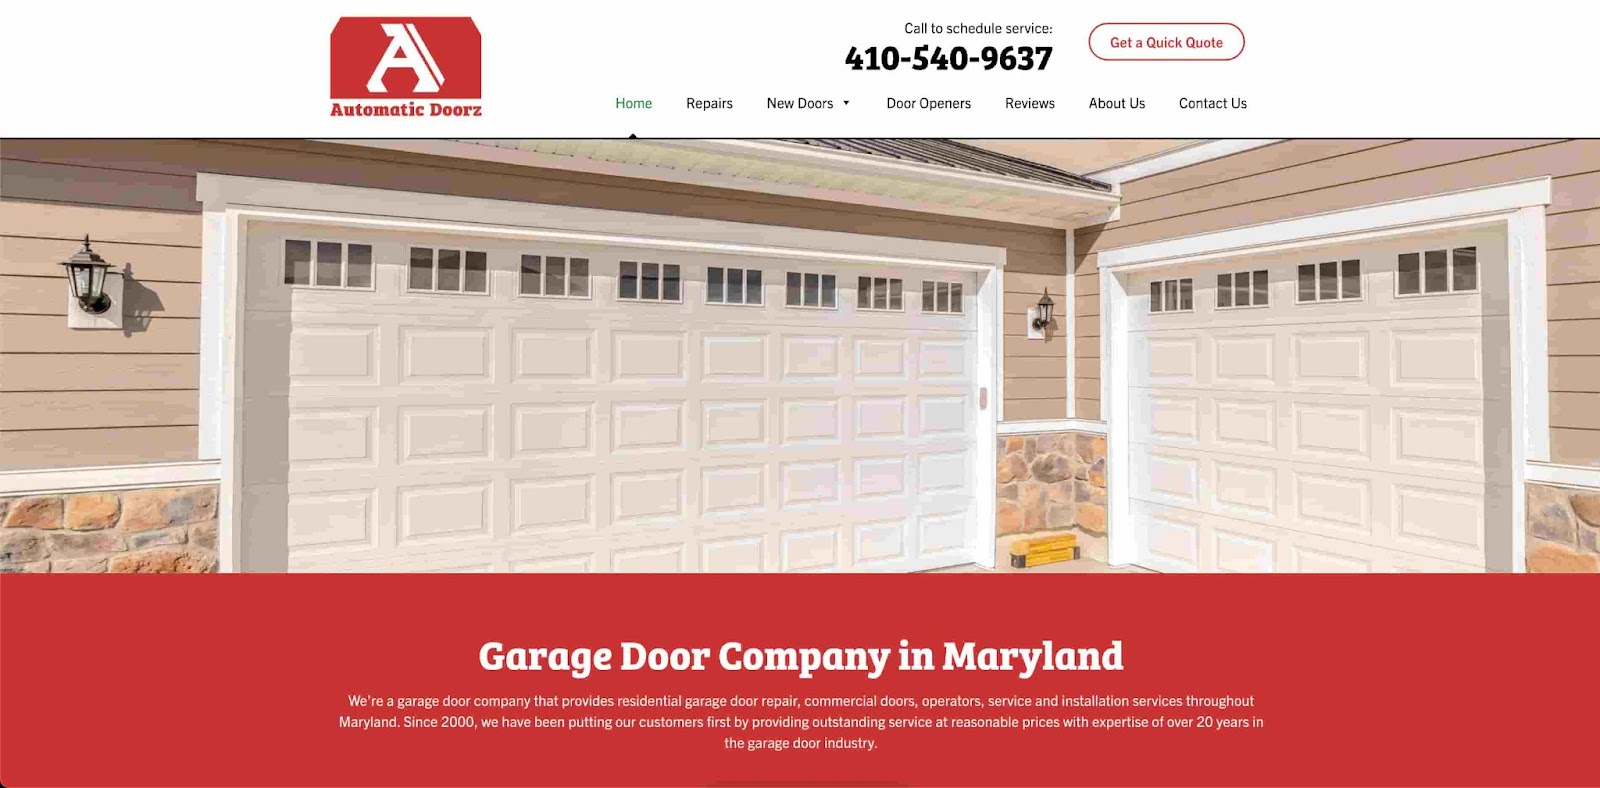 Automatic Doorz garage door company in Maryland